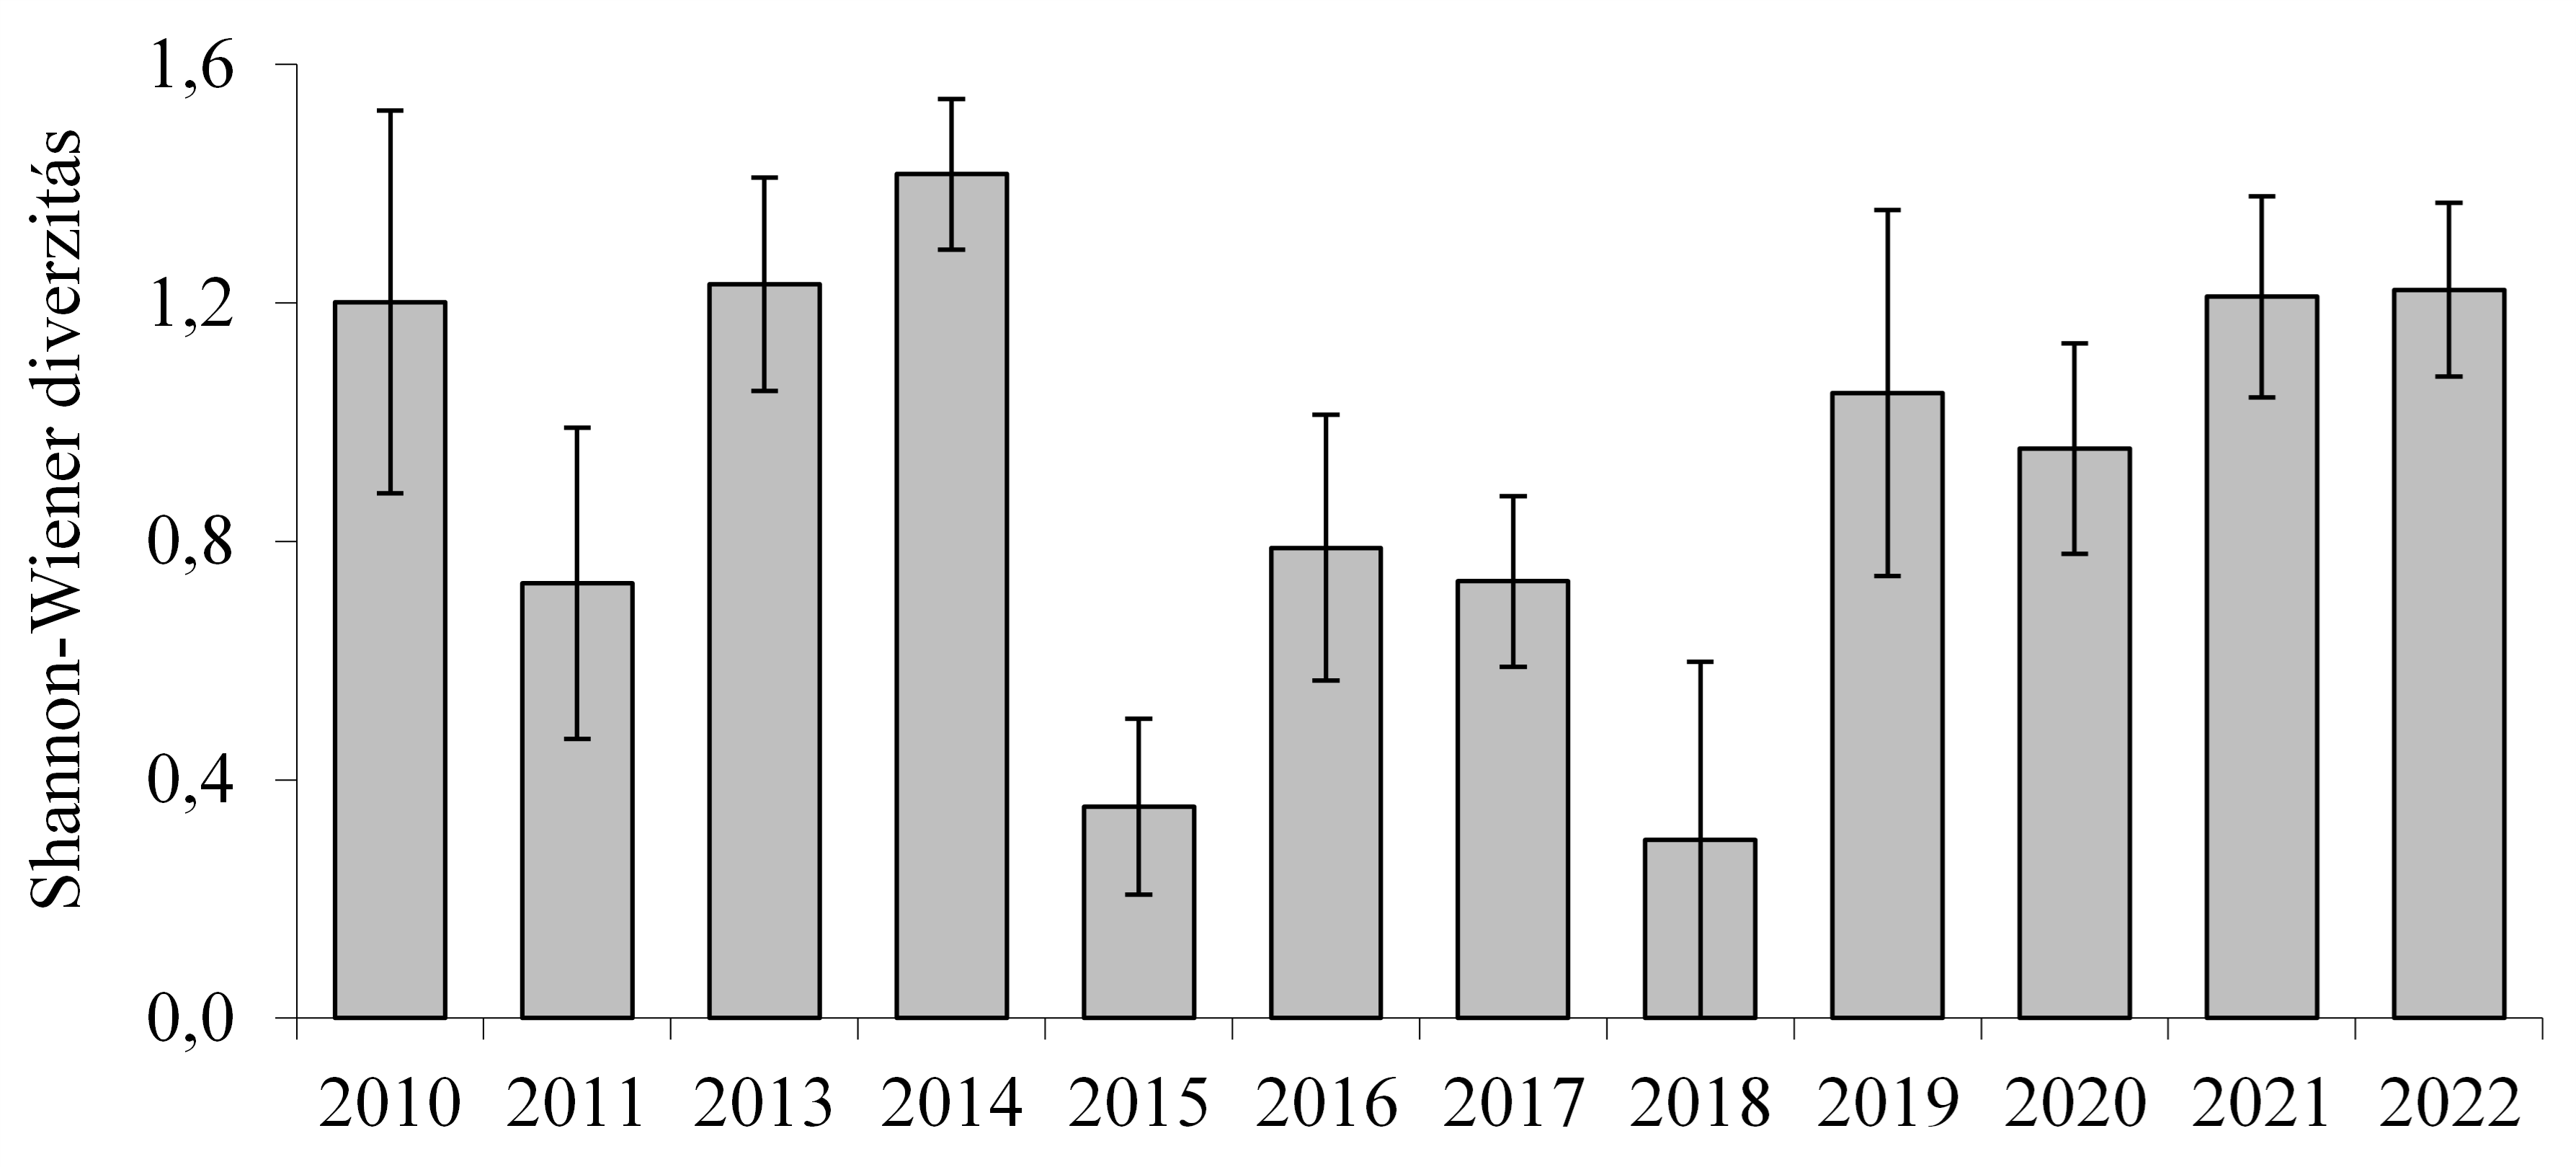 A kisemlős közösségek fajdiverzitásának évenkénti alakulása a Kis-Balaton II. ütemén (évenként ugyanazon az öt területrészen végzett felmérés adatainak az átlaga ± SE)